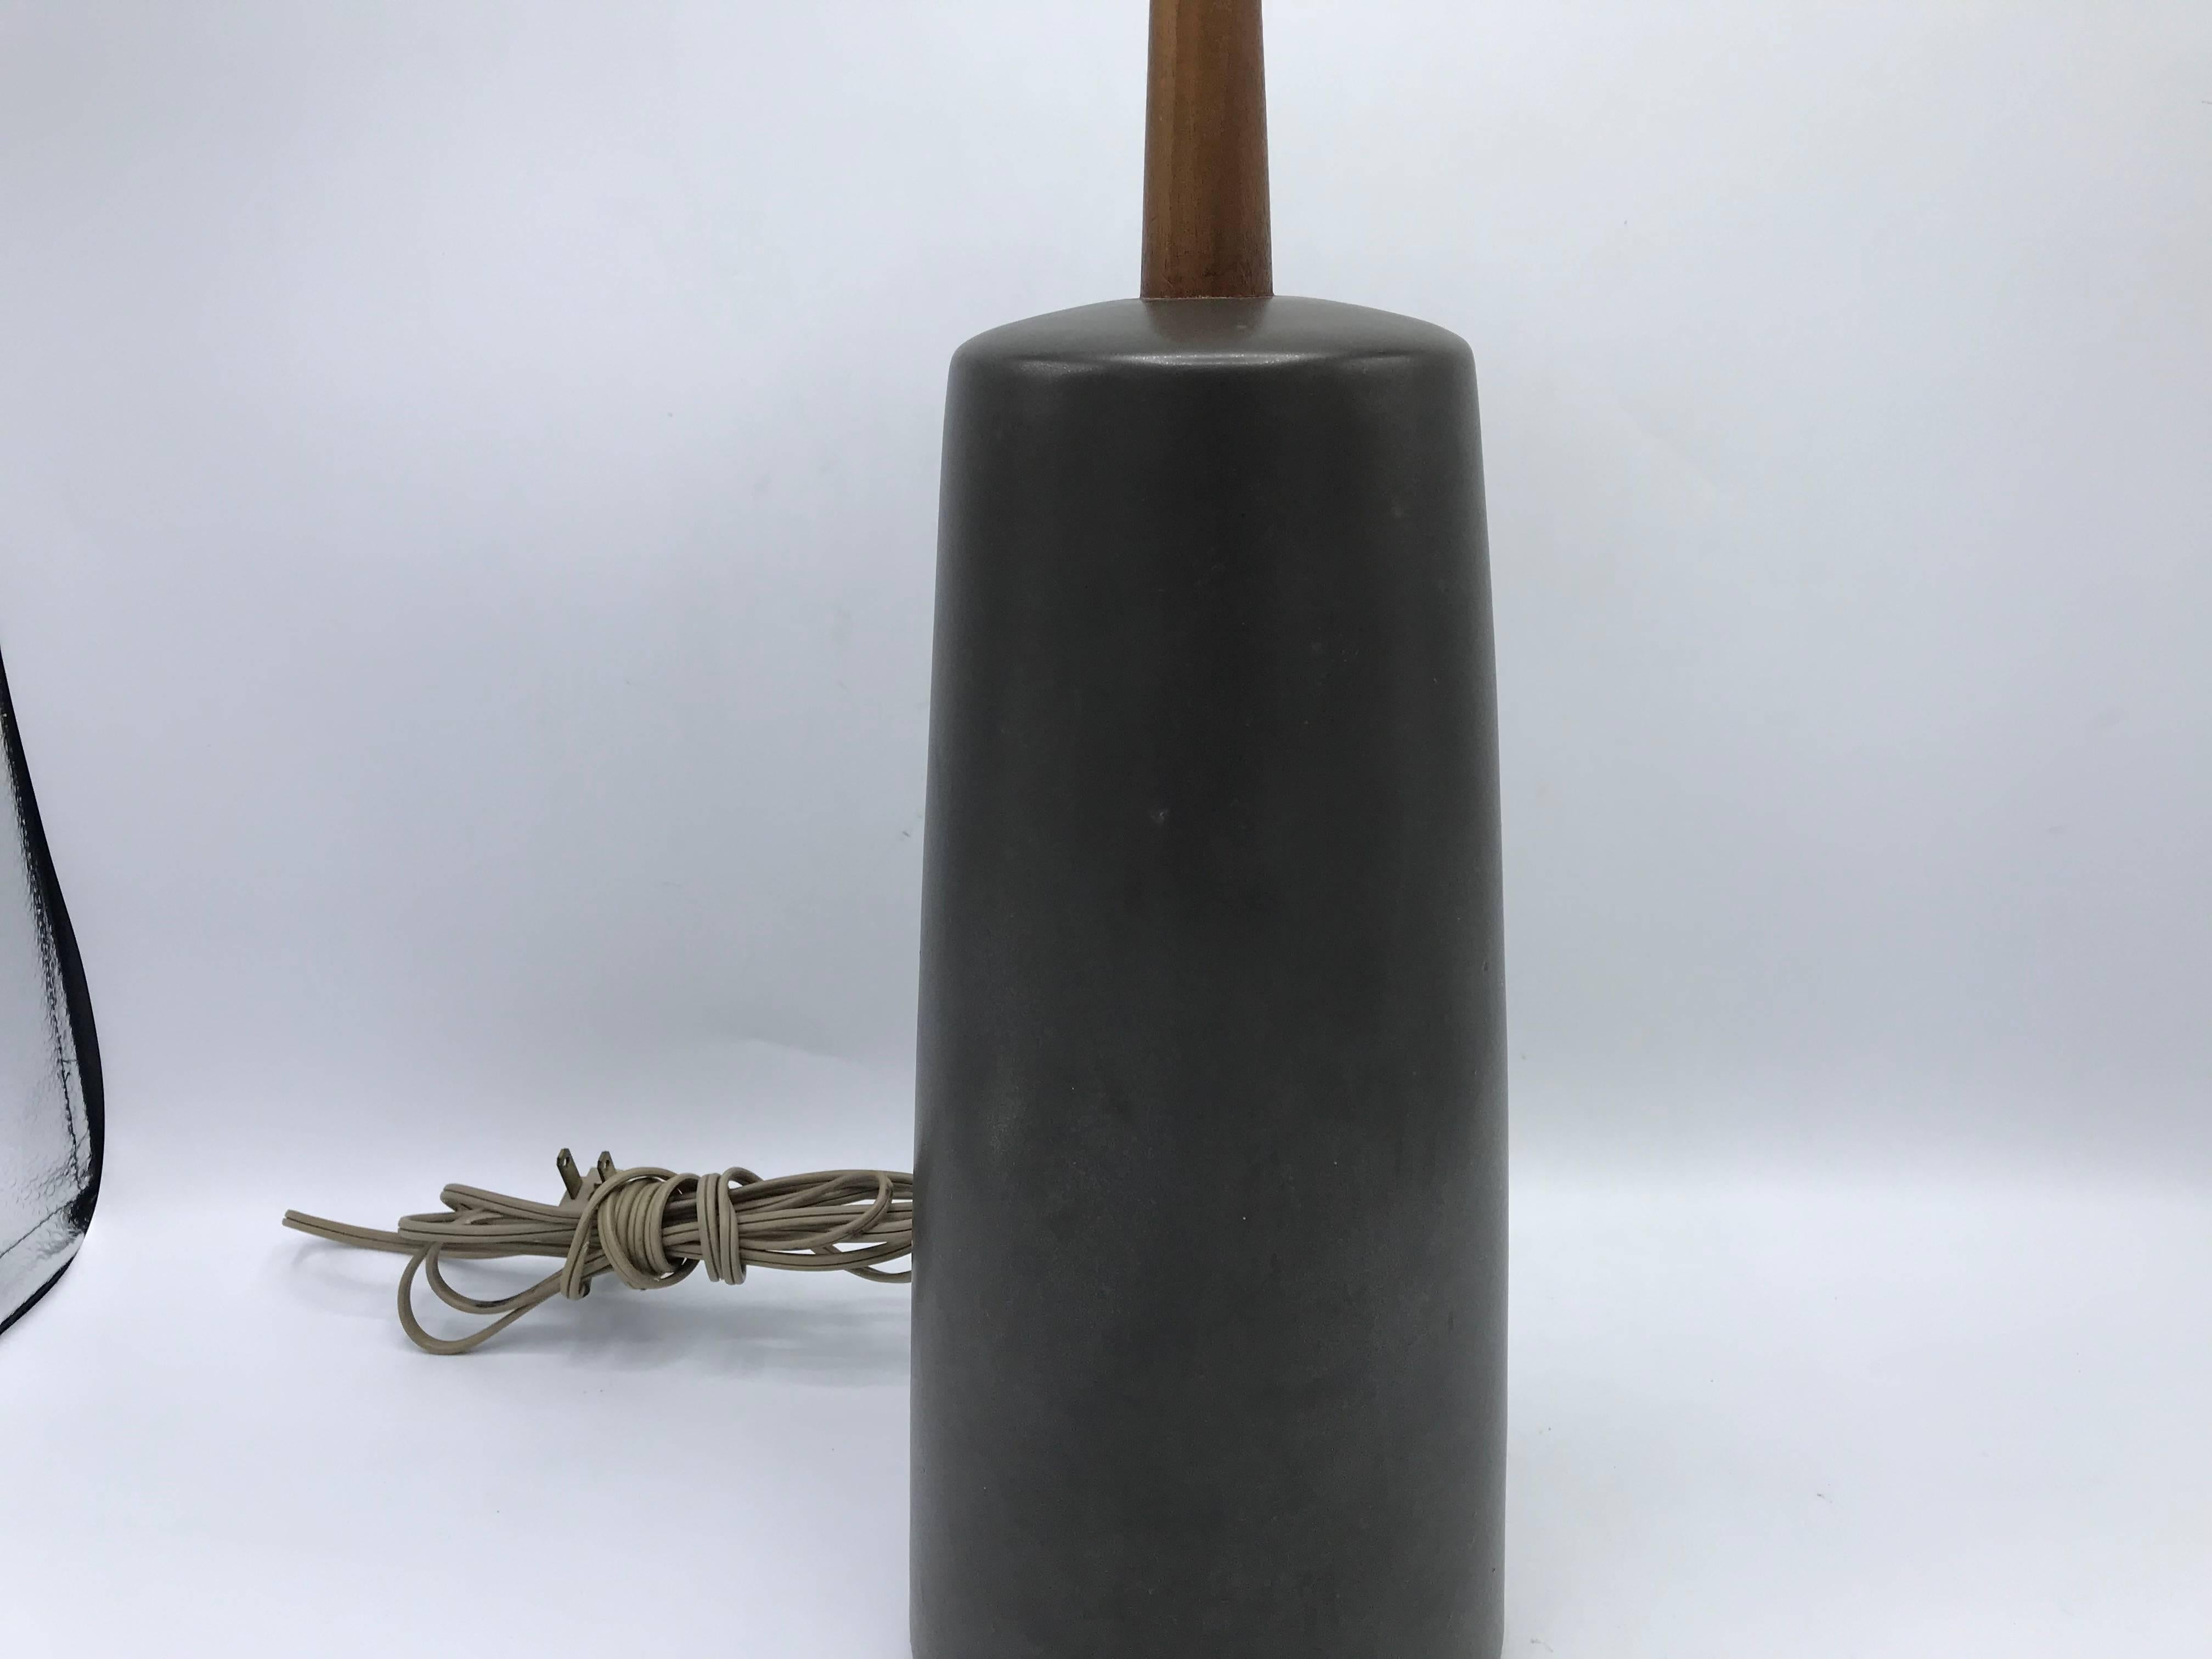 American 1960s Martz Ceramic Lamp with Original Teak Finial